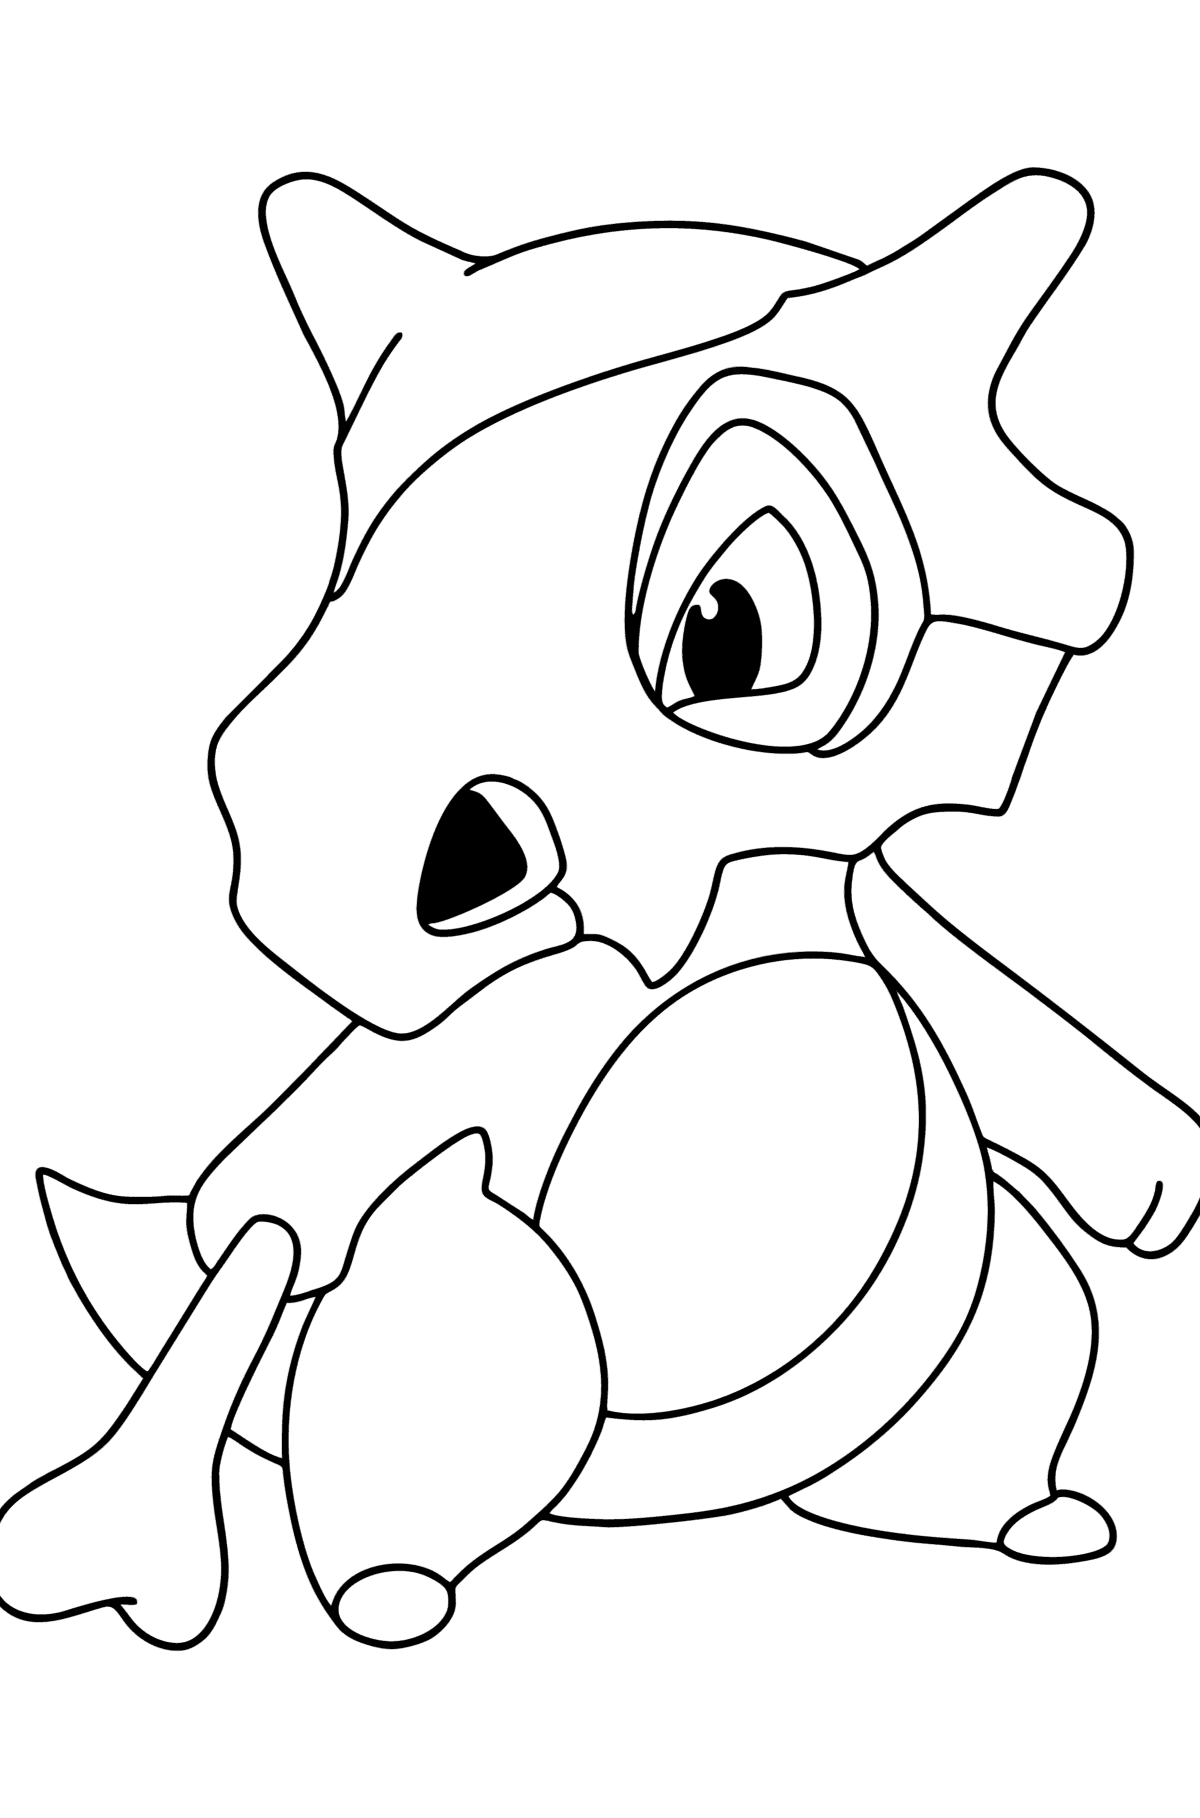 Ausmalbild Pokemon Go Cubone - Malvorlagen für Kinder